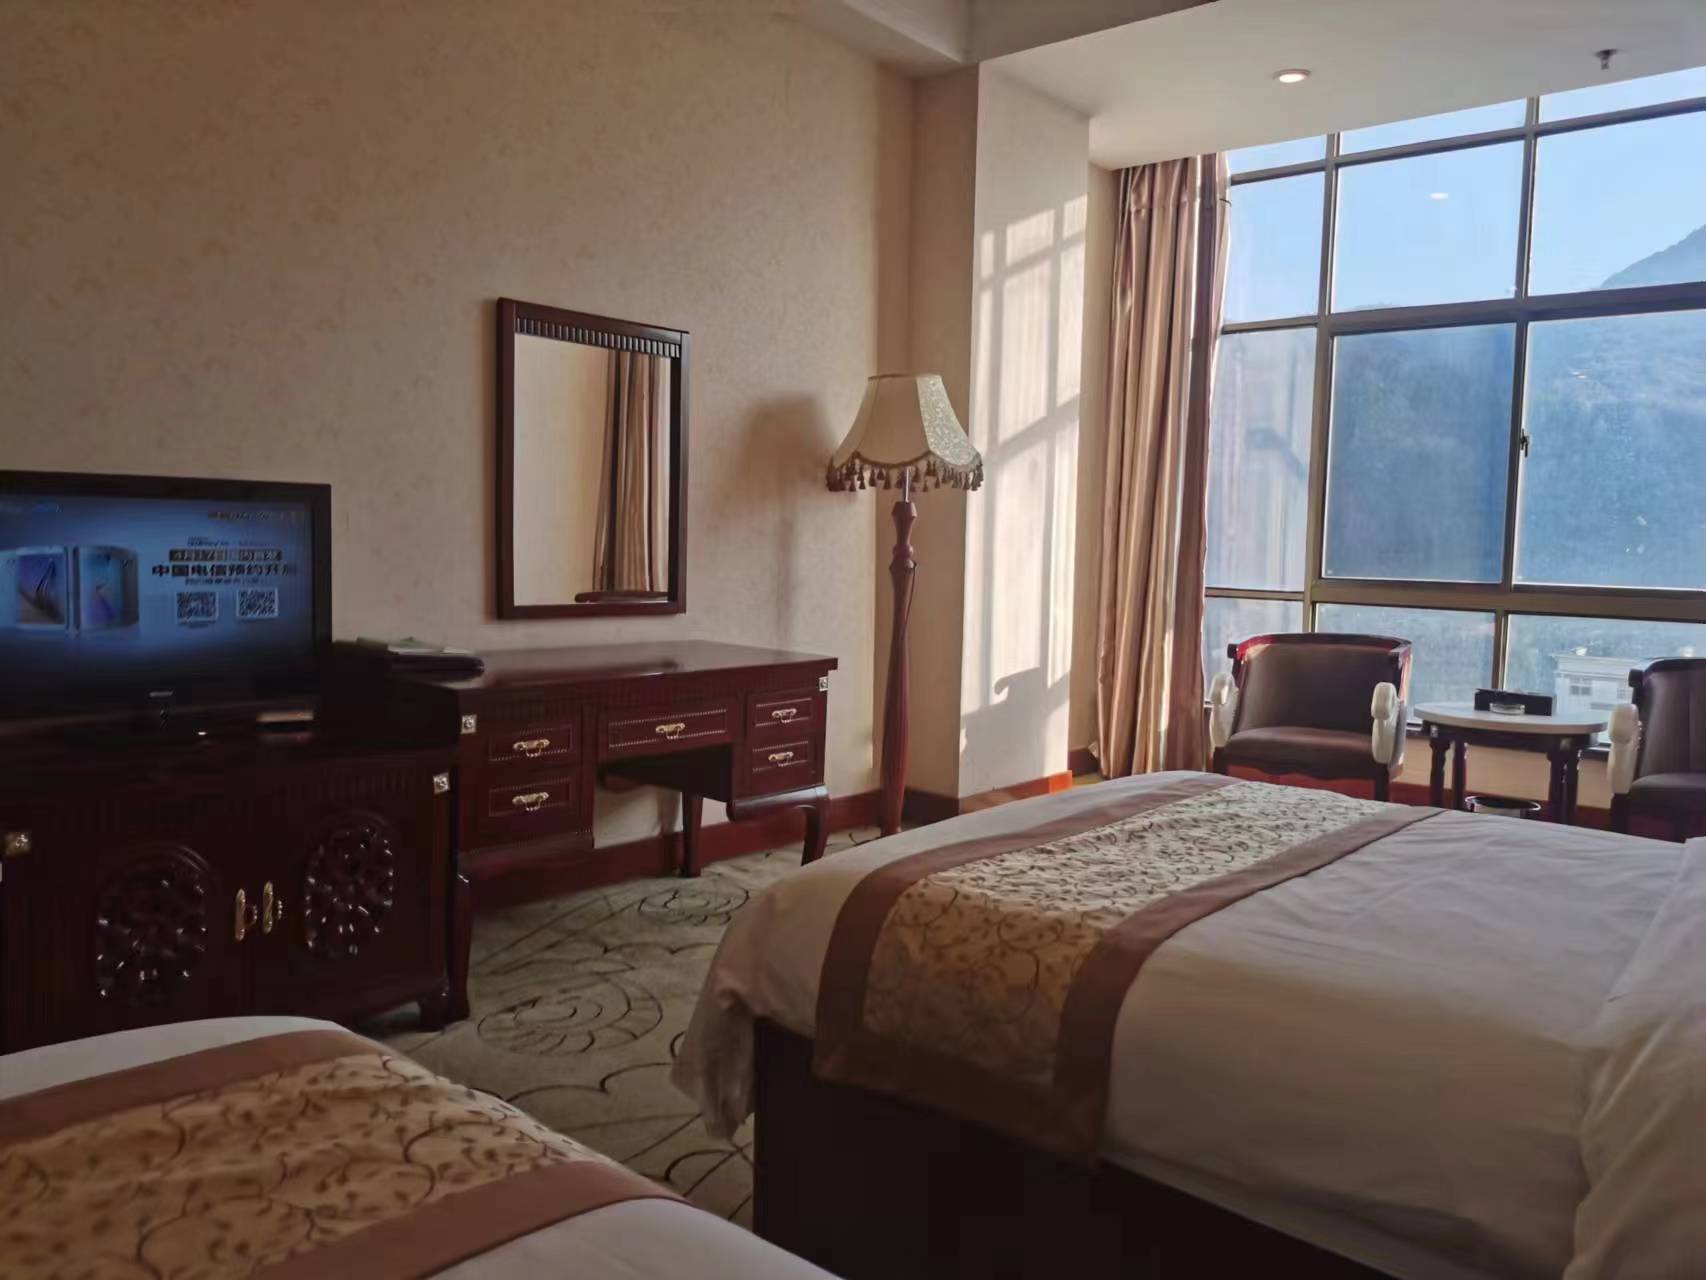 酒店楼层挺高，风景很不错，落地窗的大玻璃，房间看起来挺干净，适合拍照的酒店。